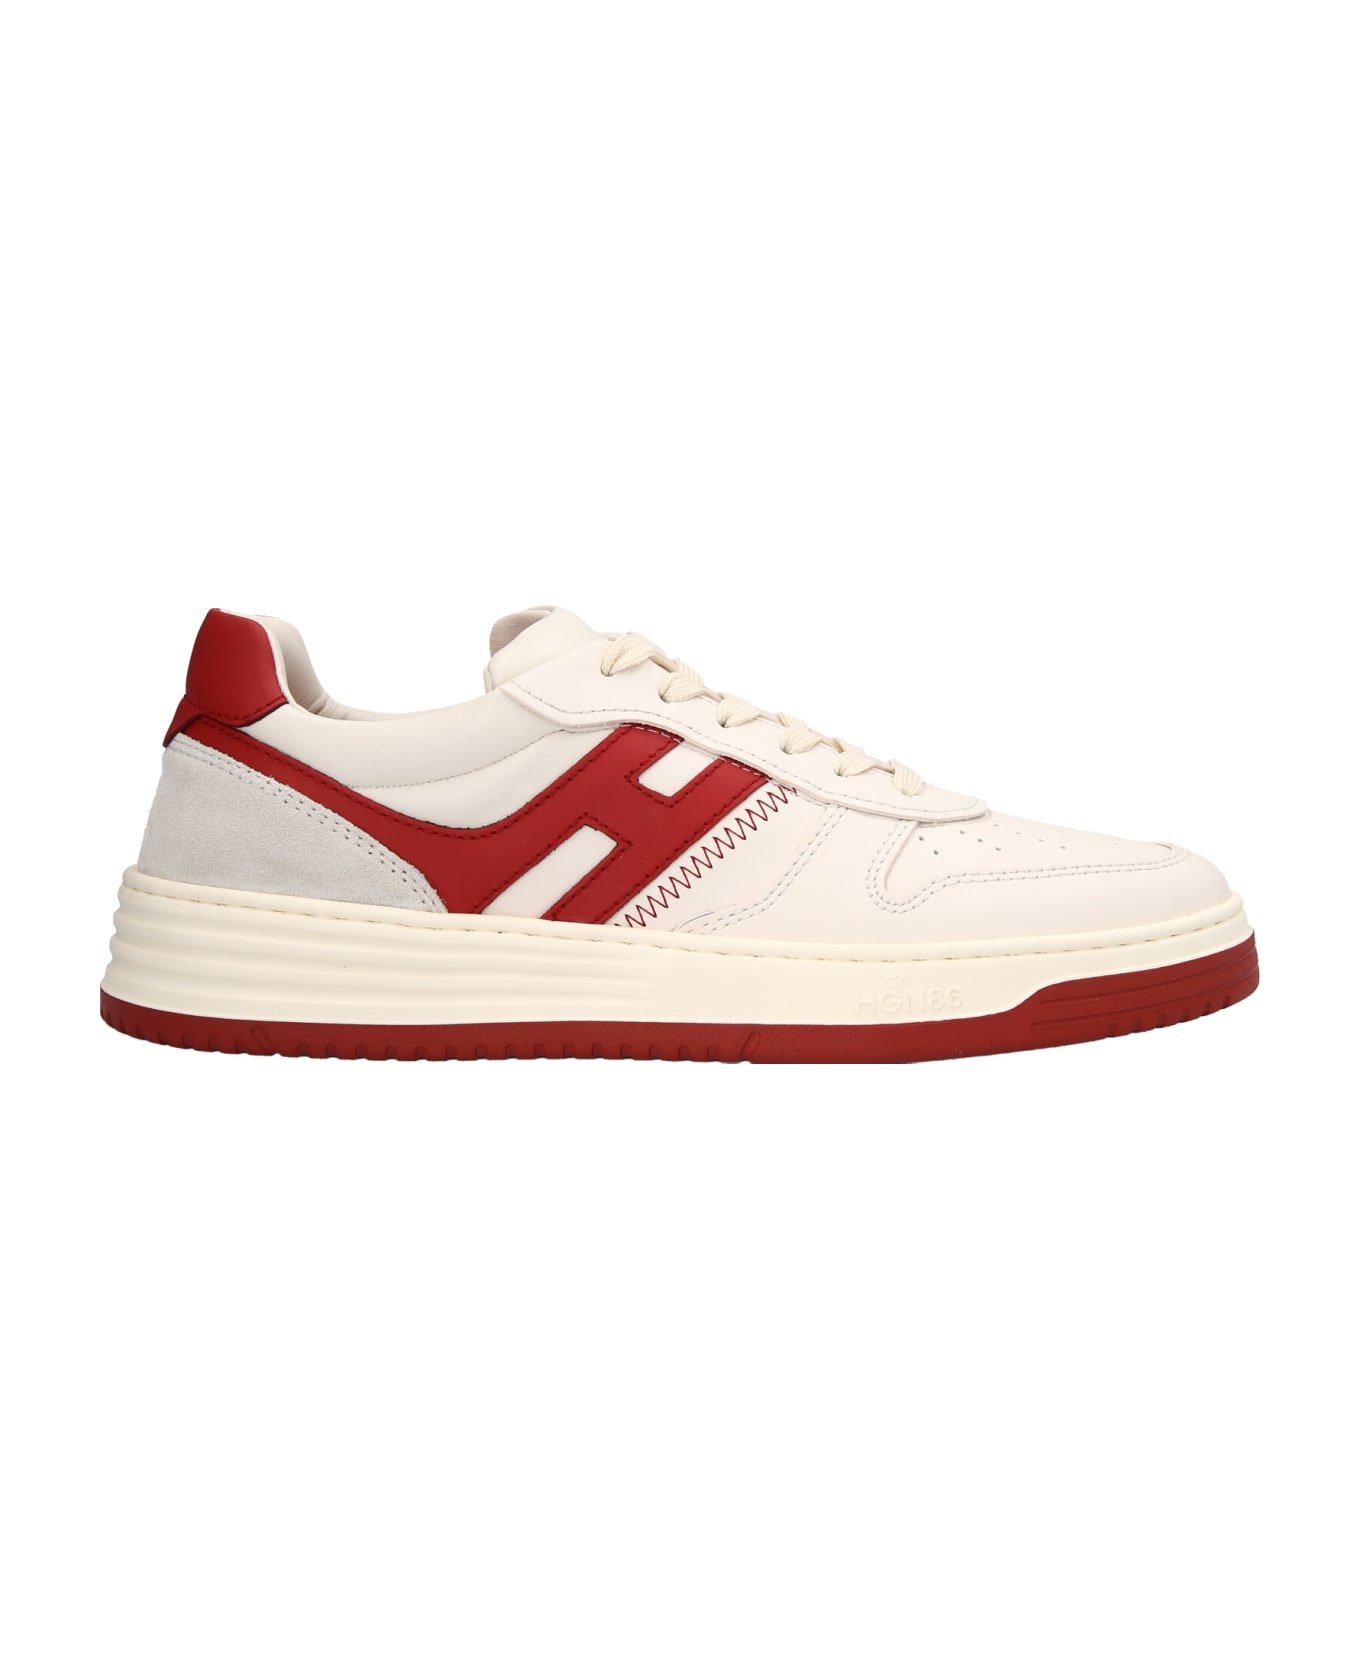 Hogan 'h630' Sneakers Hogan - Red